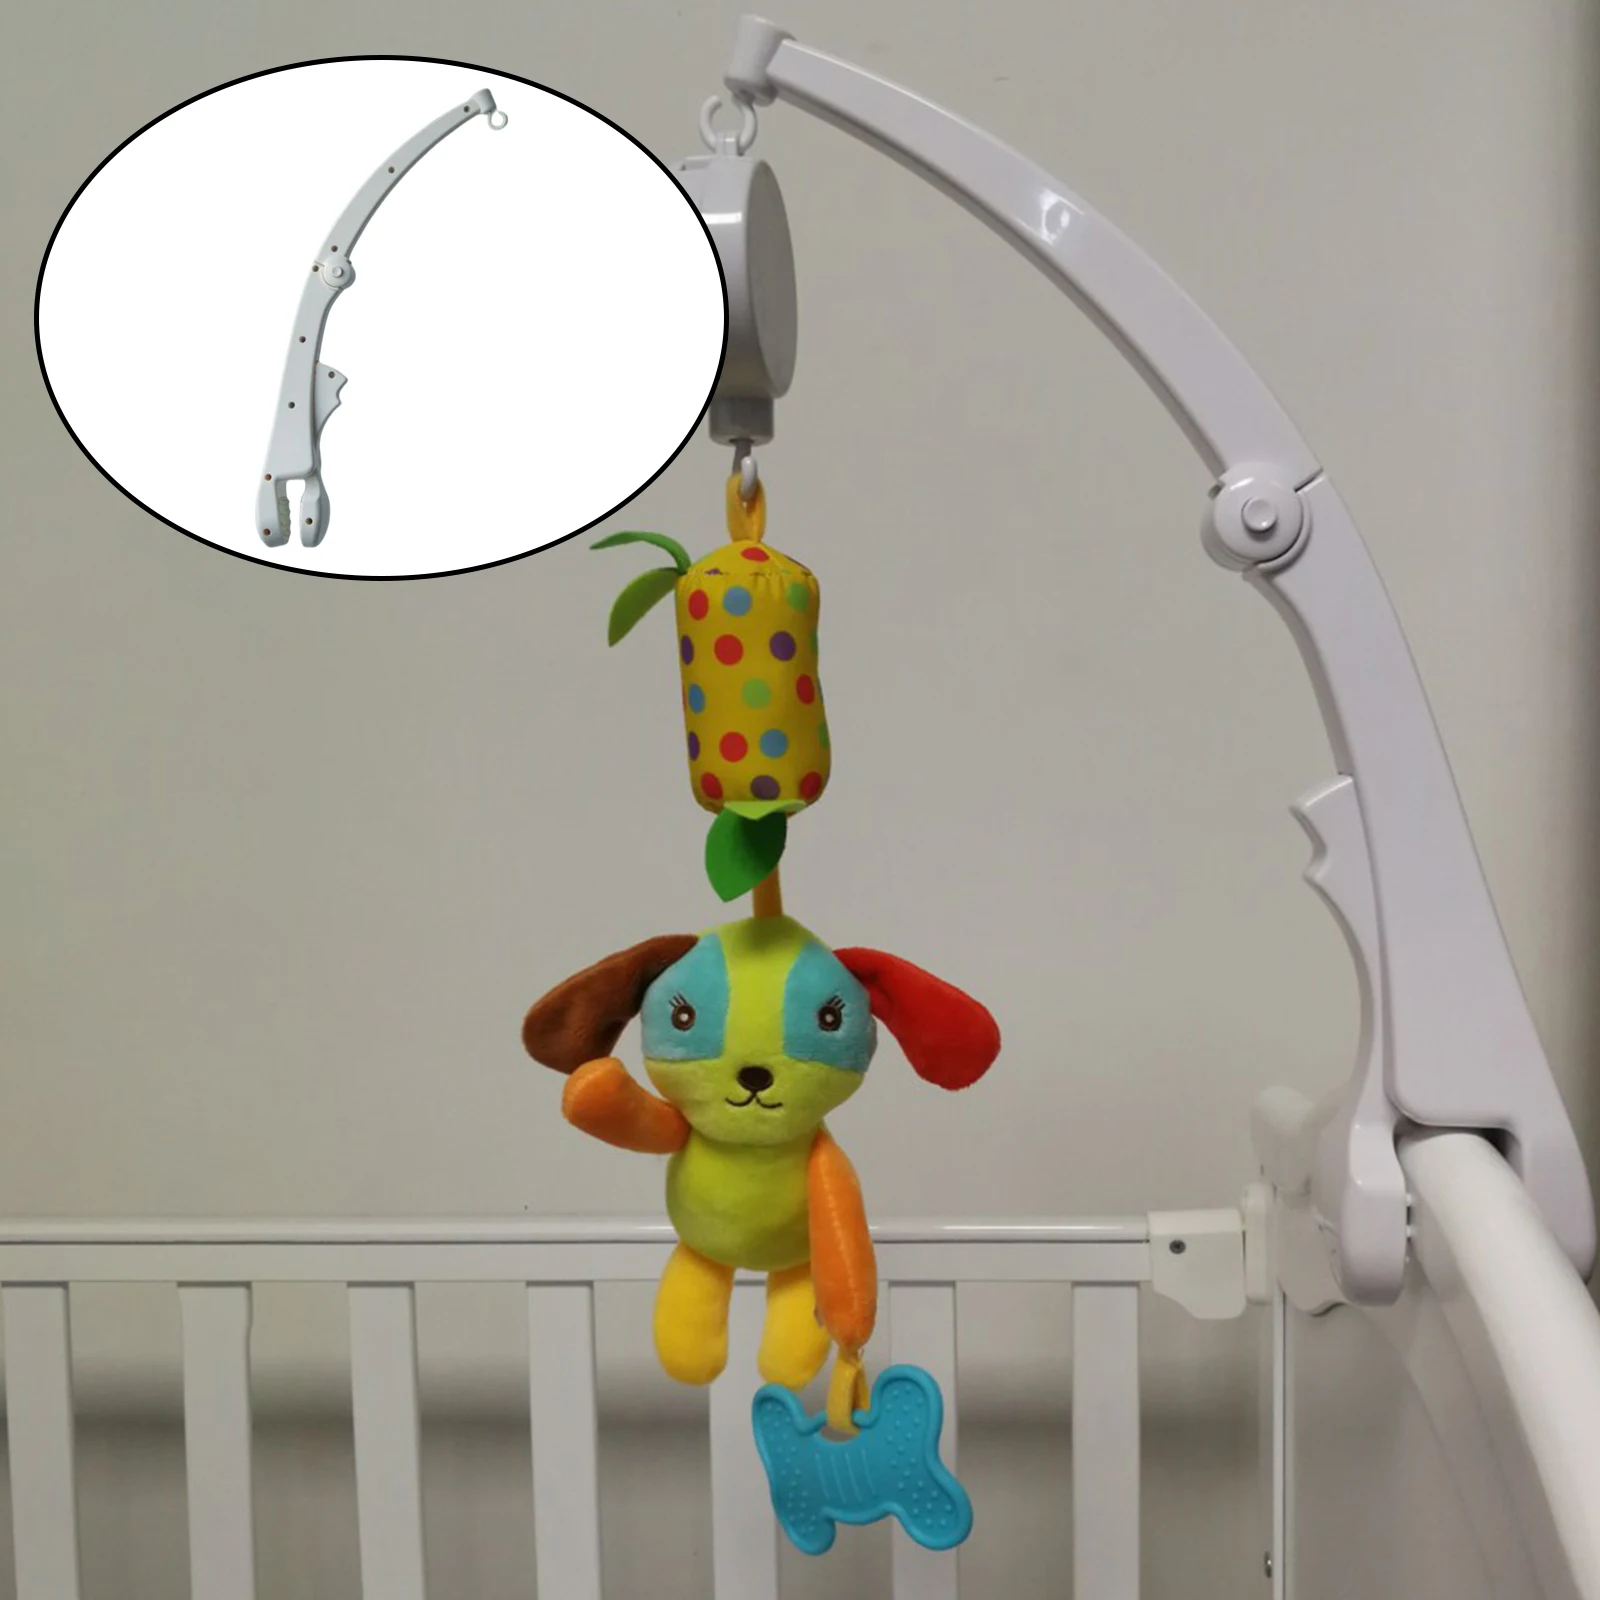 Baby Crib Mobile Bed Holder Rattles er Rotated Arm Bracket Adjustable